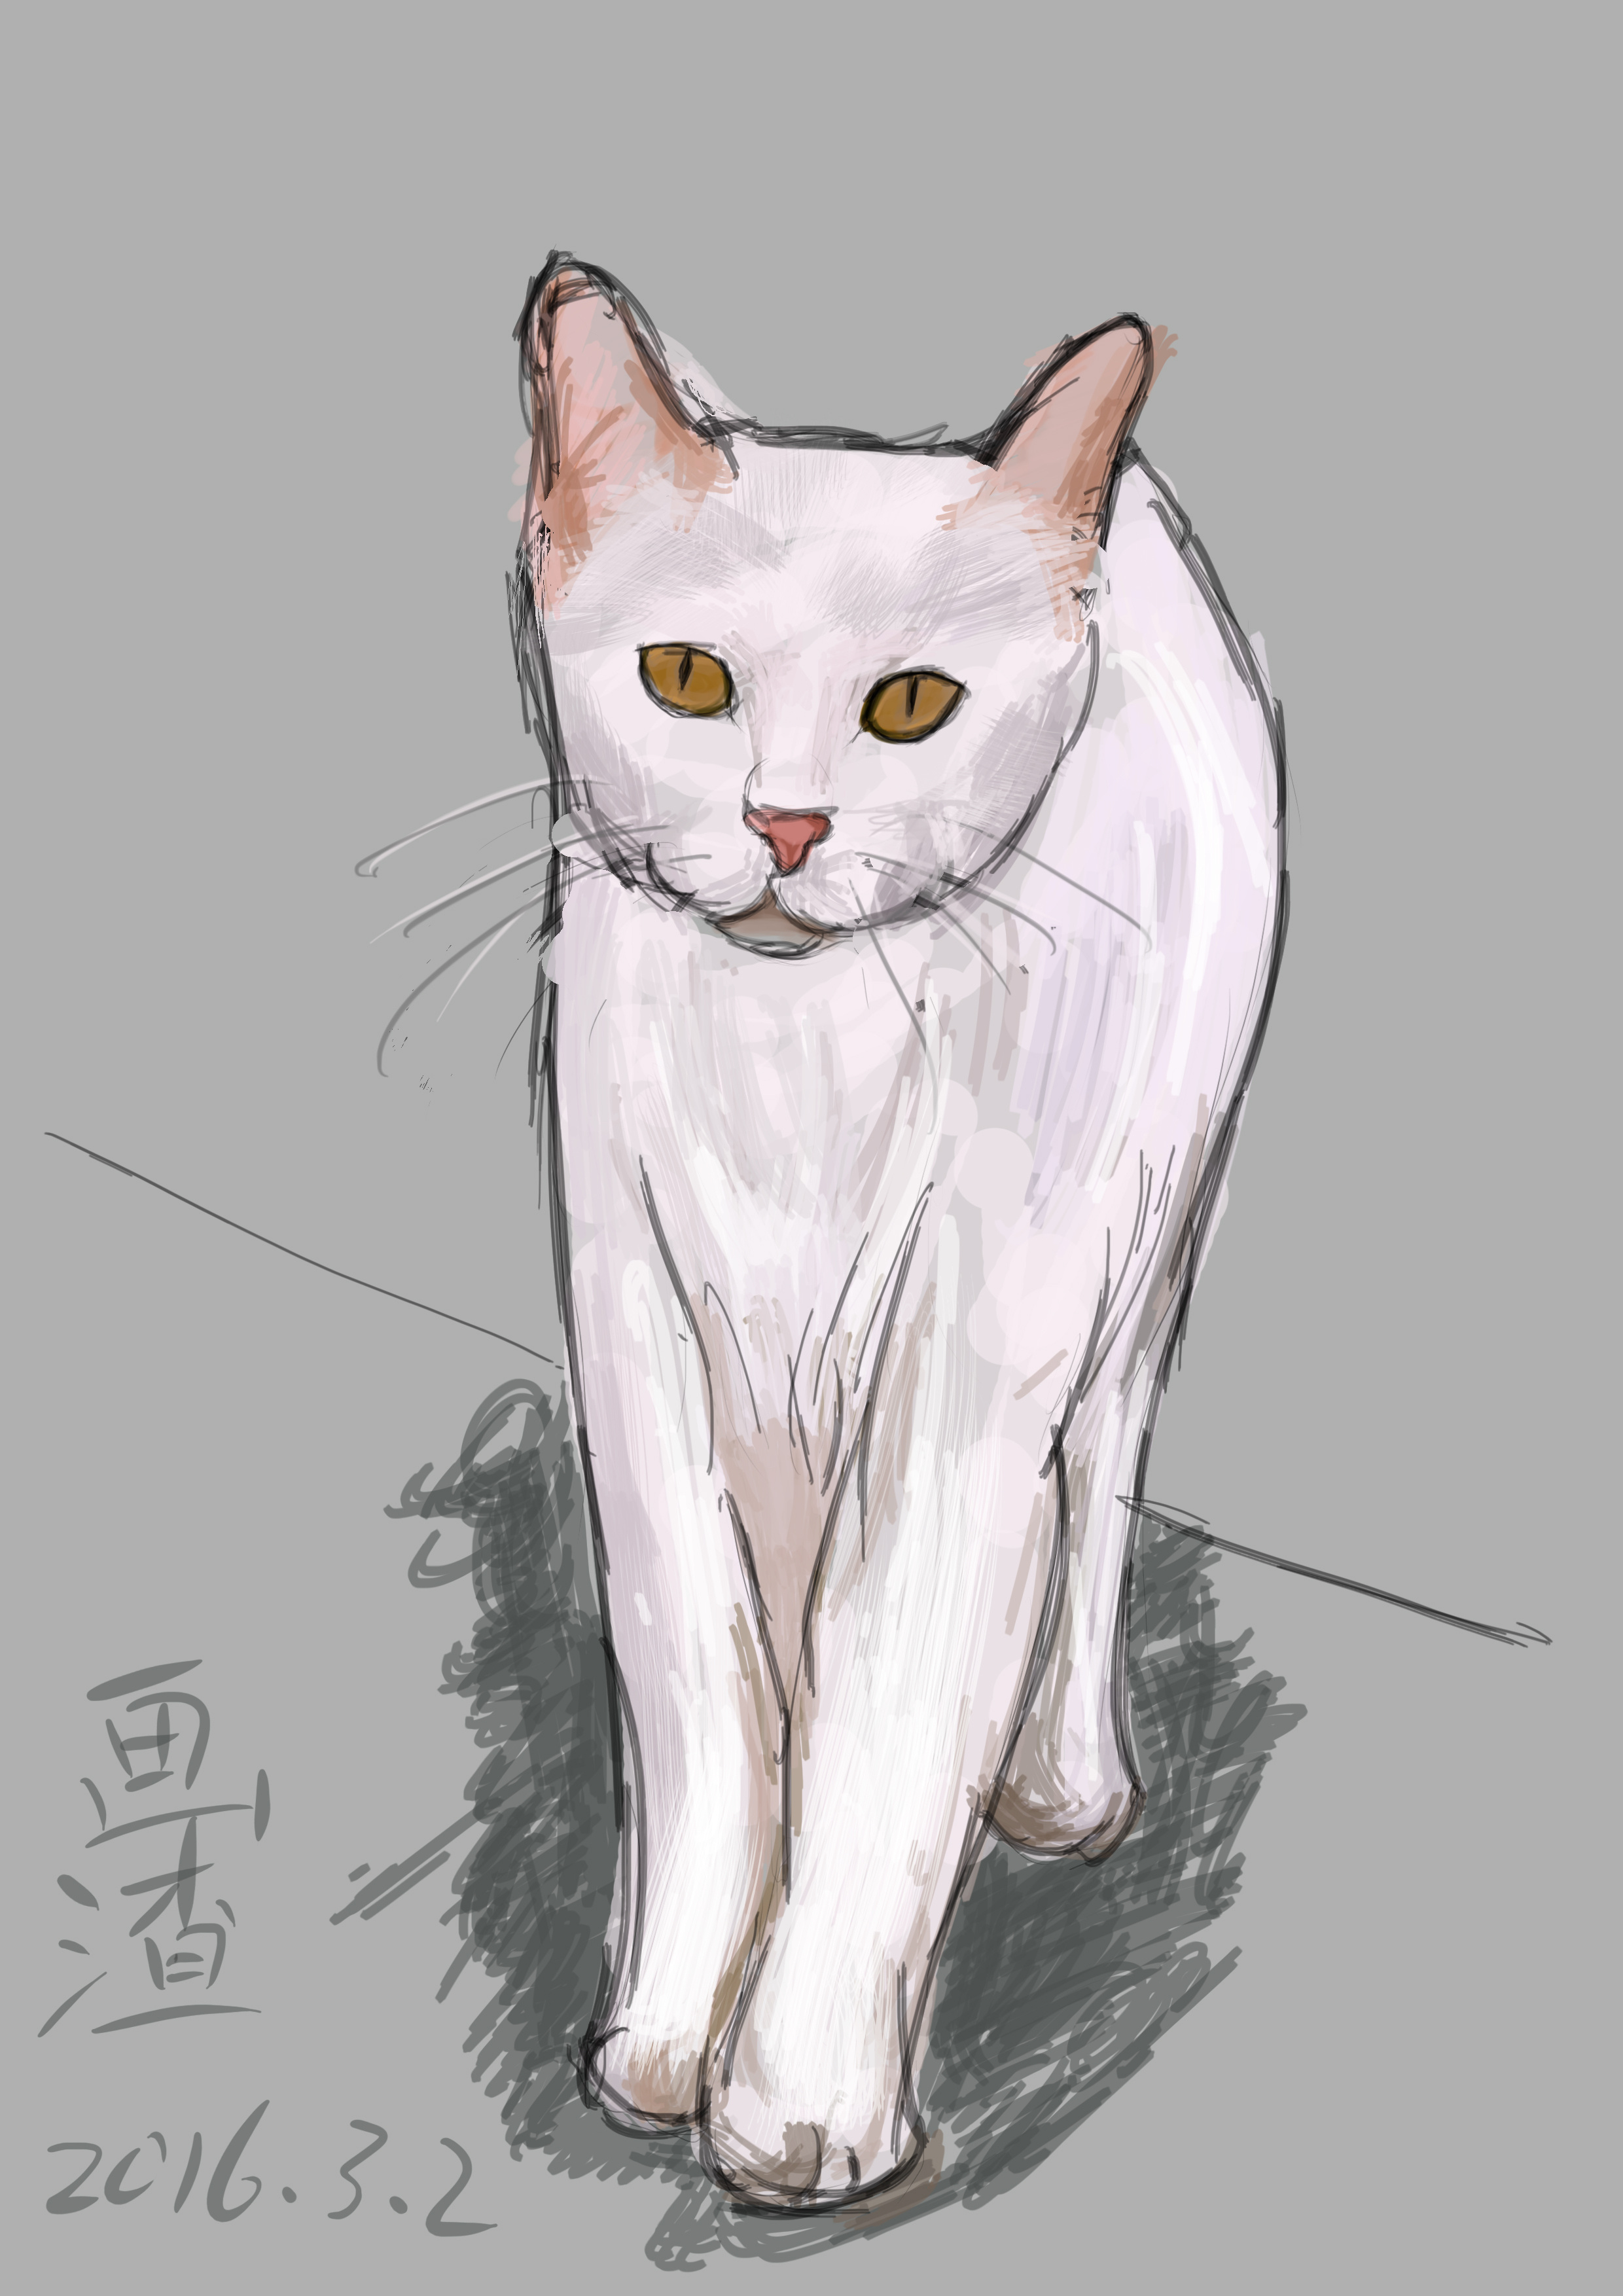 动物萌宠系列小白猫插画图片-千库网